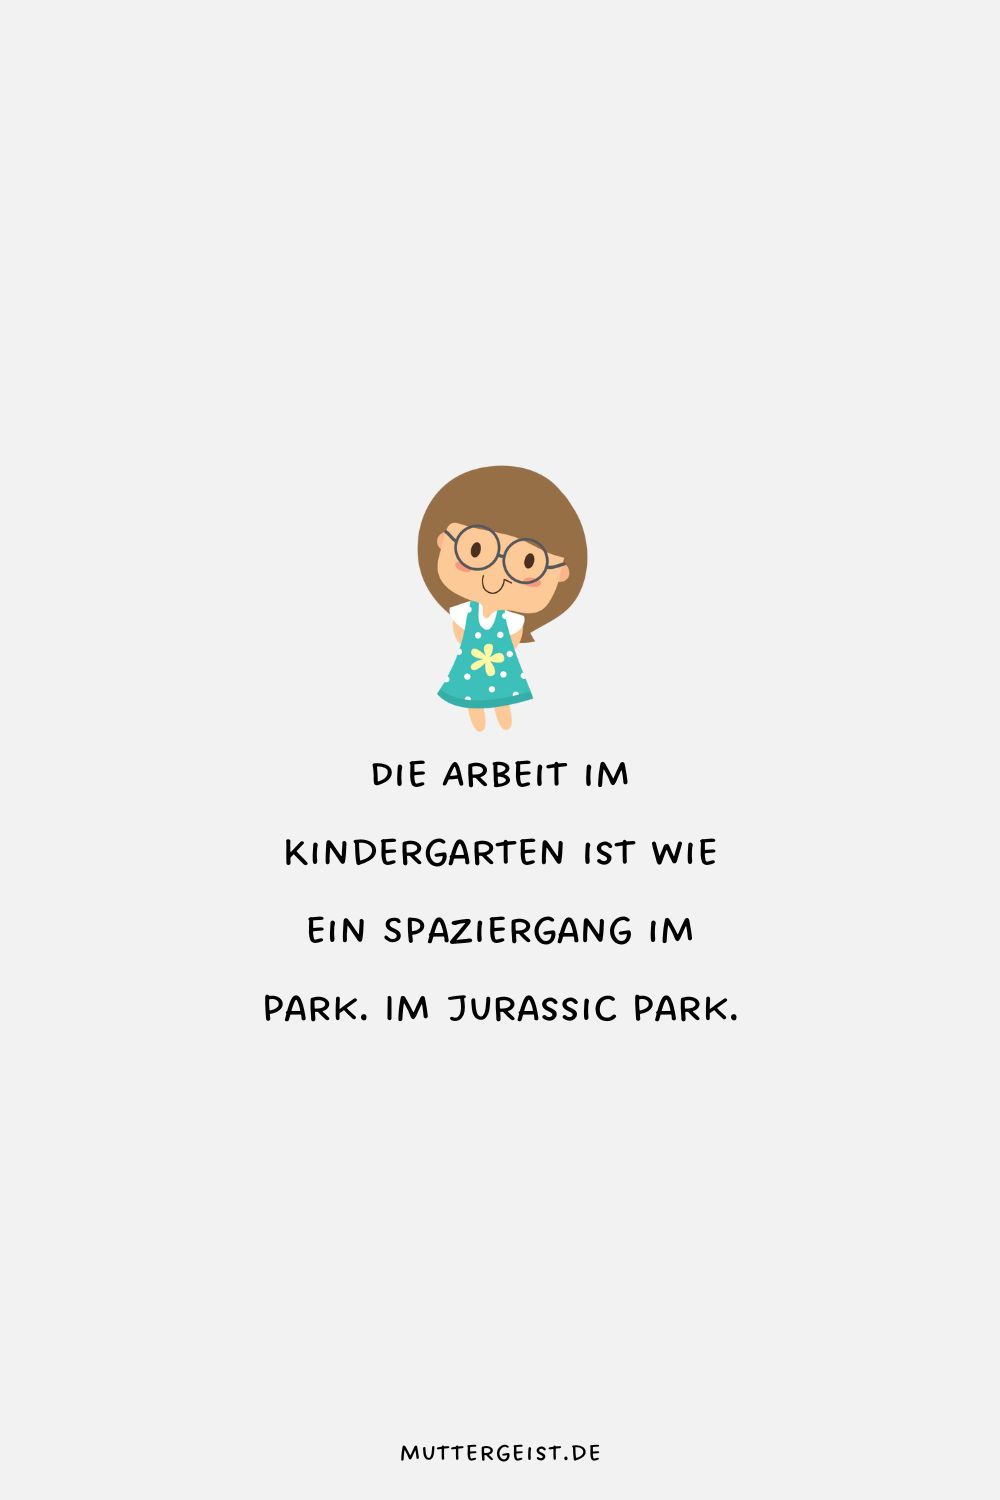 Die Arbeit im Kindergarten ist wie ein Spaziergang im Park. Im Jurassic Park